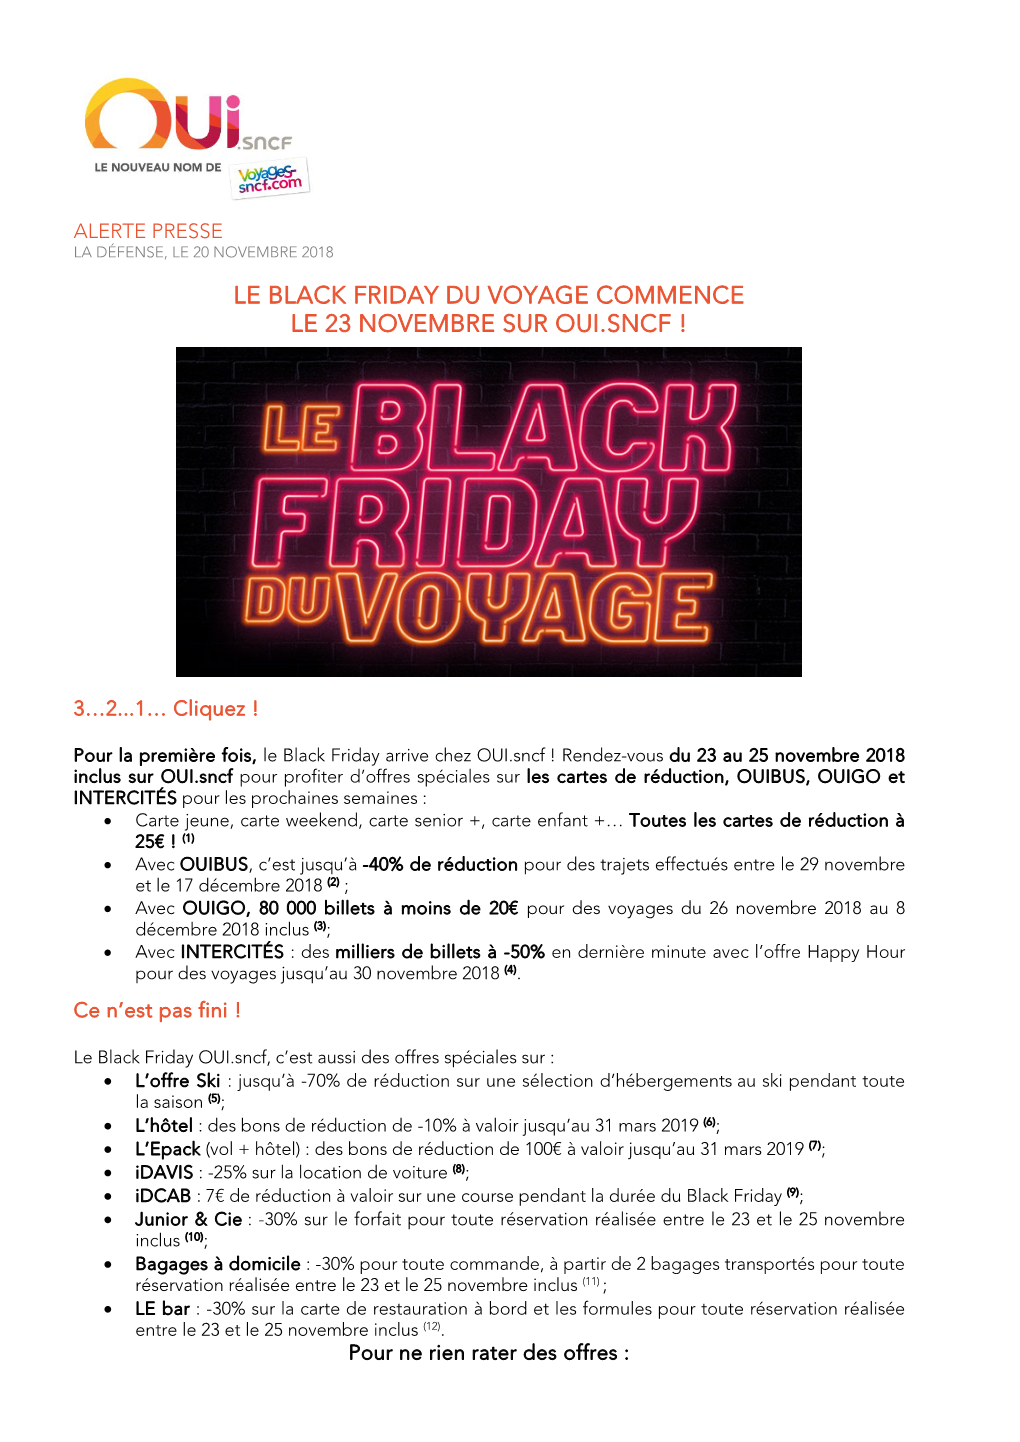 Le Black Friday Du Voyage Commence Le 23 Novembre Sur Oui.Sncf !